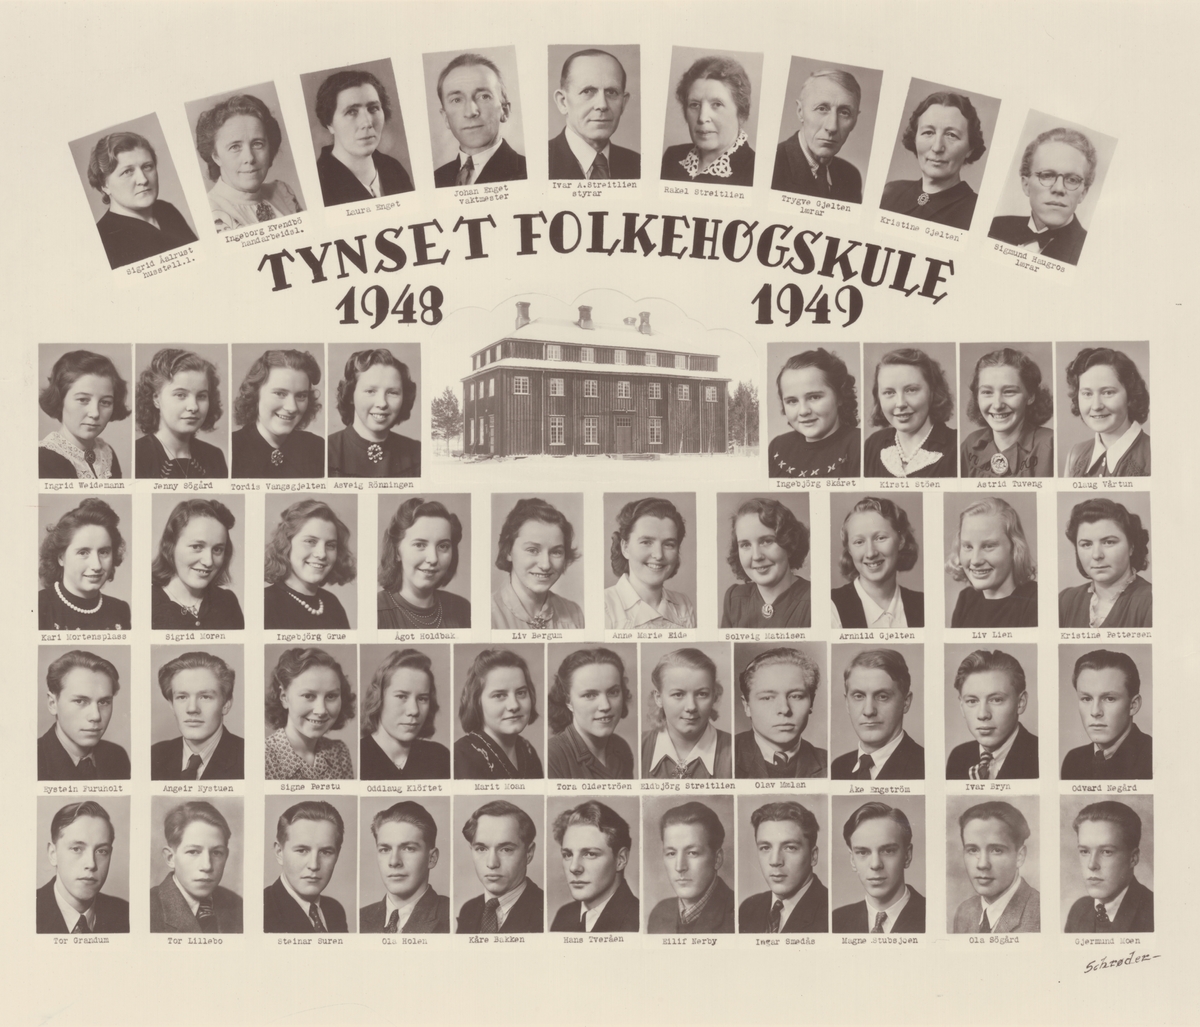 Tynset folkehøgskule 1948-49